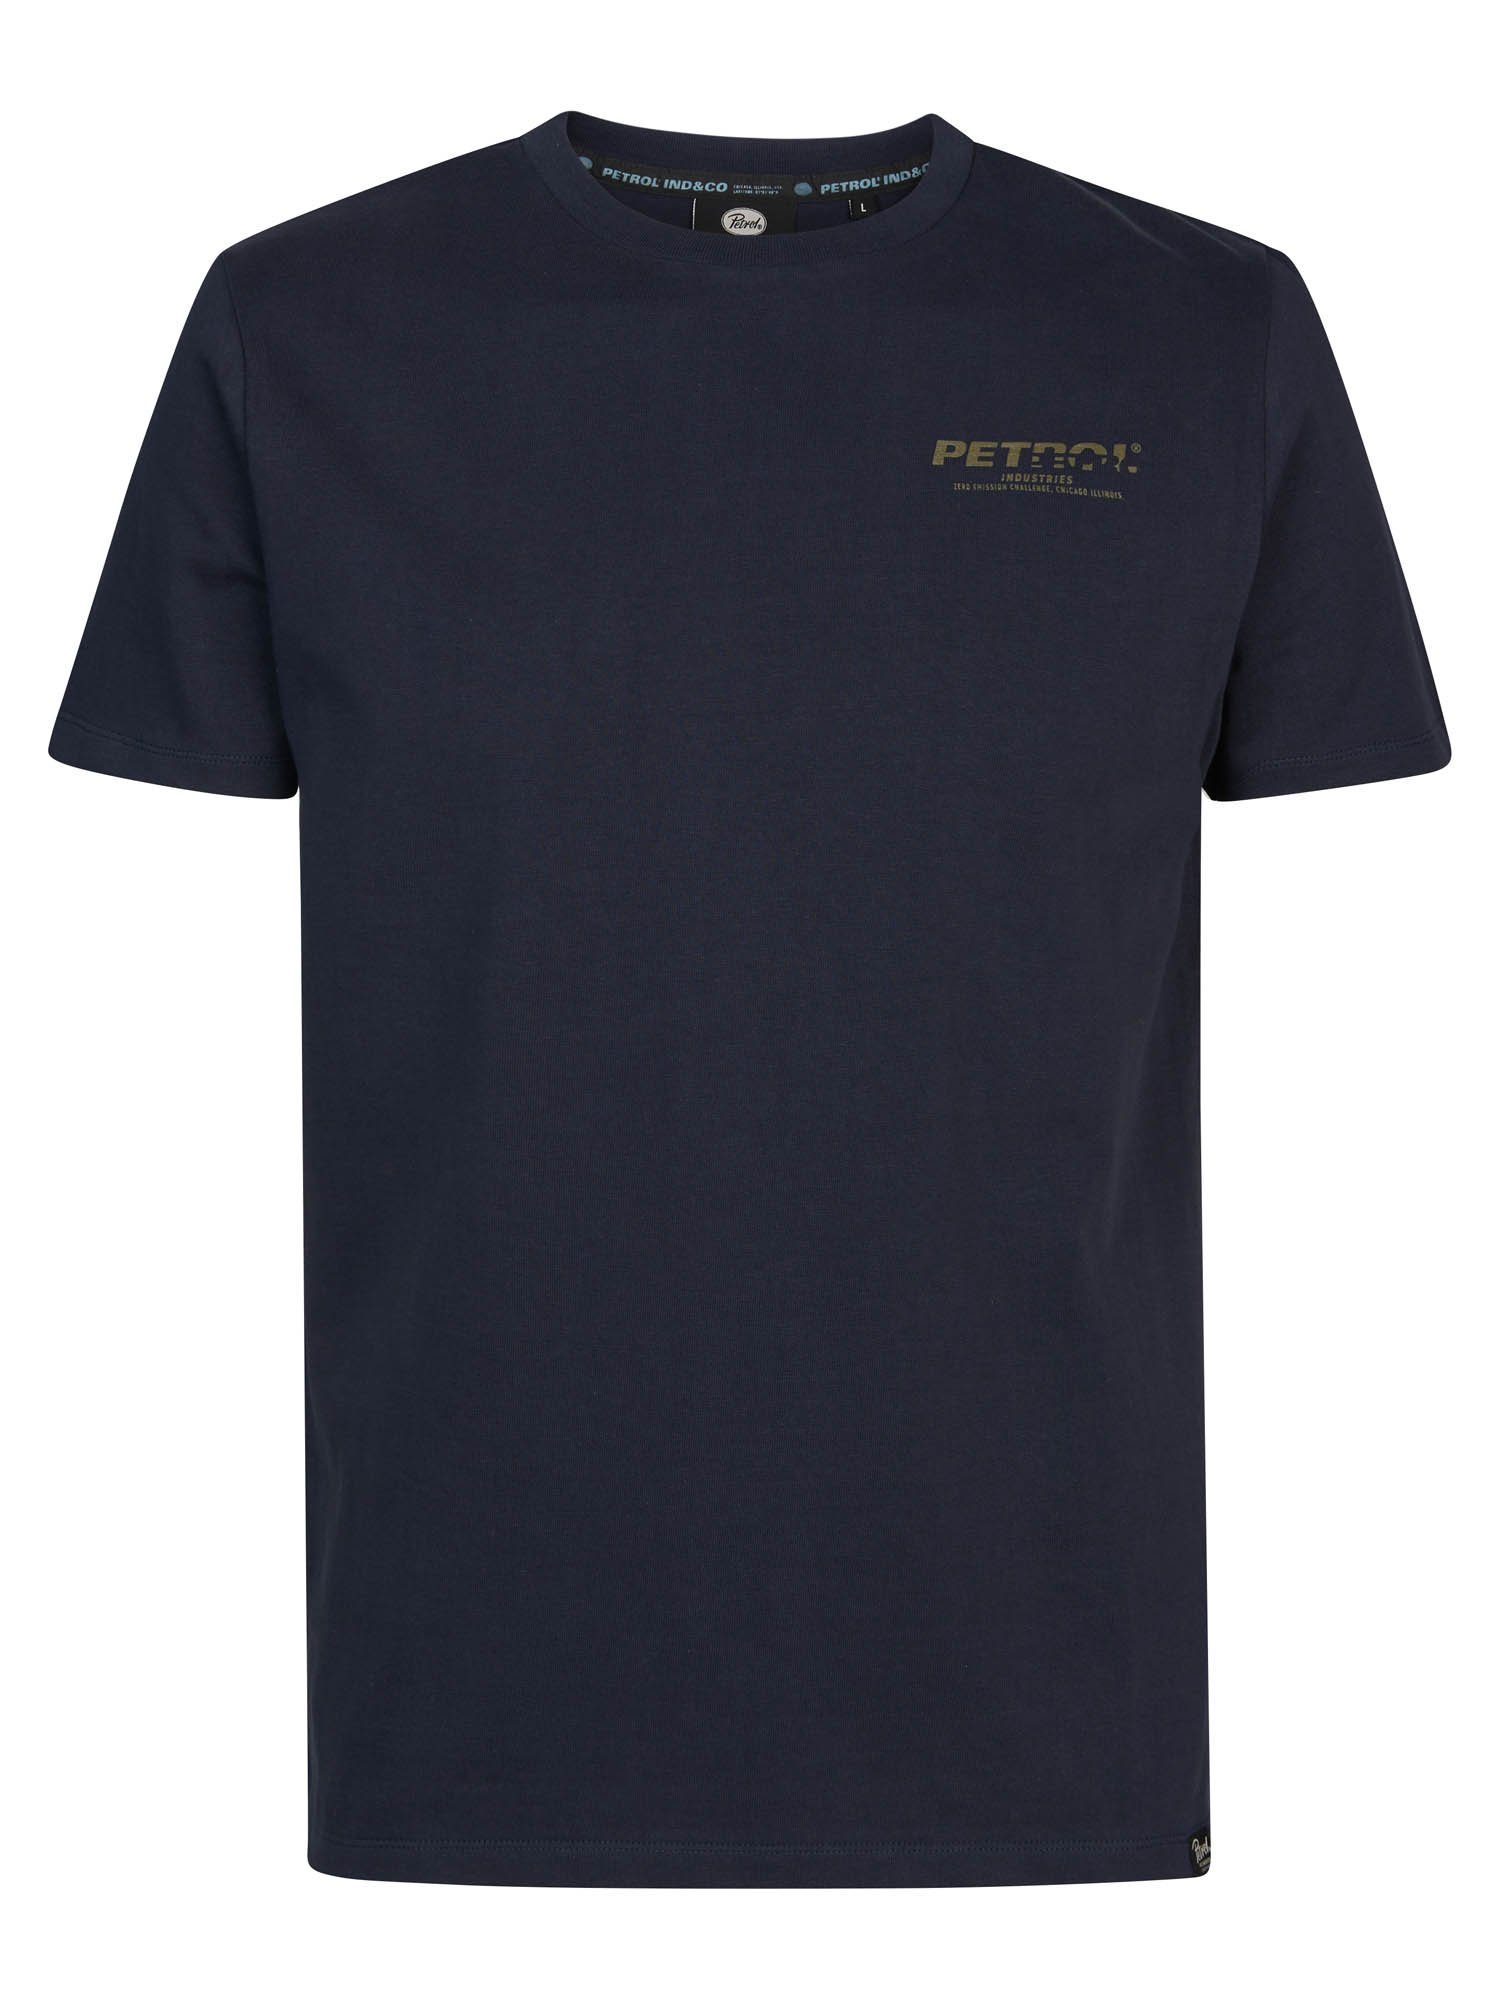 Petrol Industries T-Shirt Men T-Shirt SS